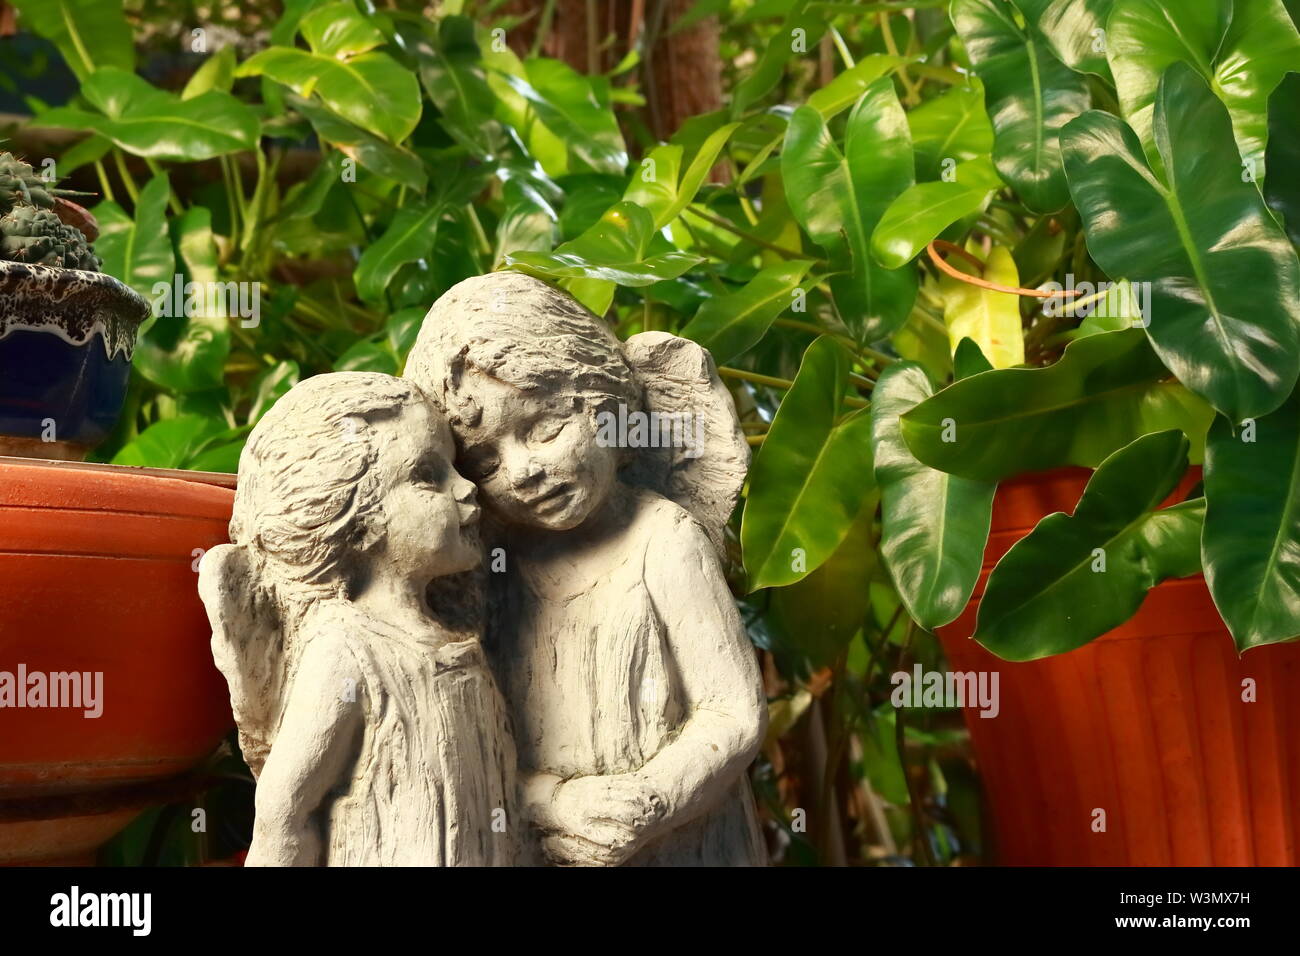 Primo piano di due angelo amante statue in piedi insieme nel giardino, il concetto di amore Foto Stock